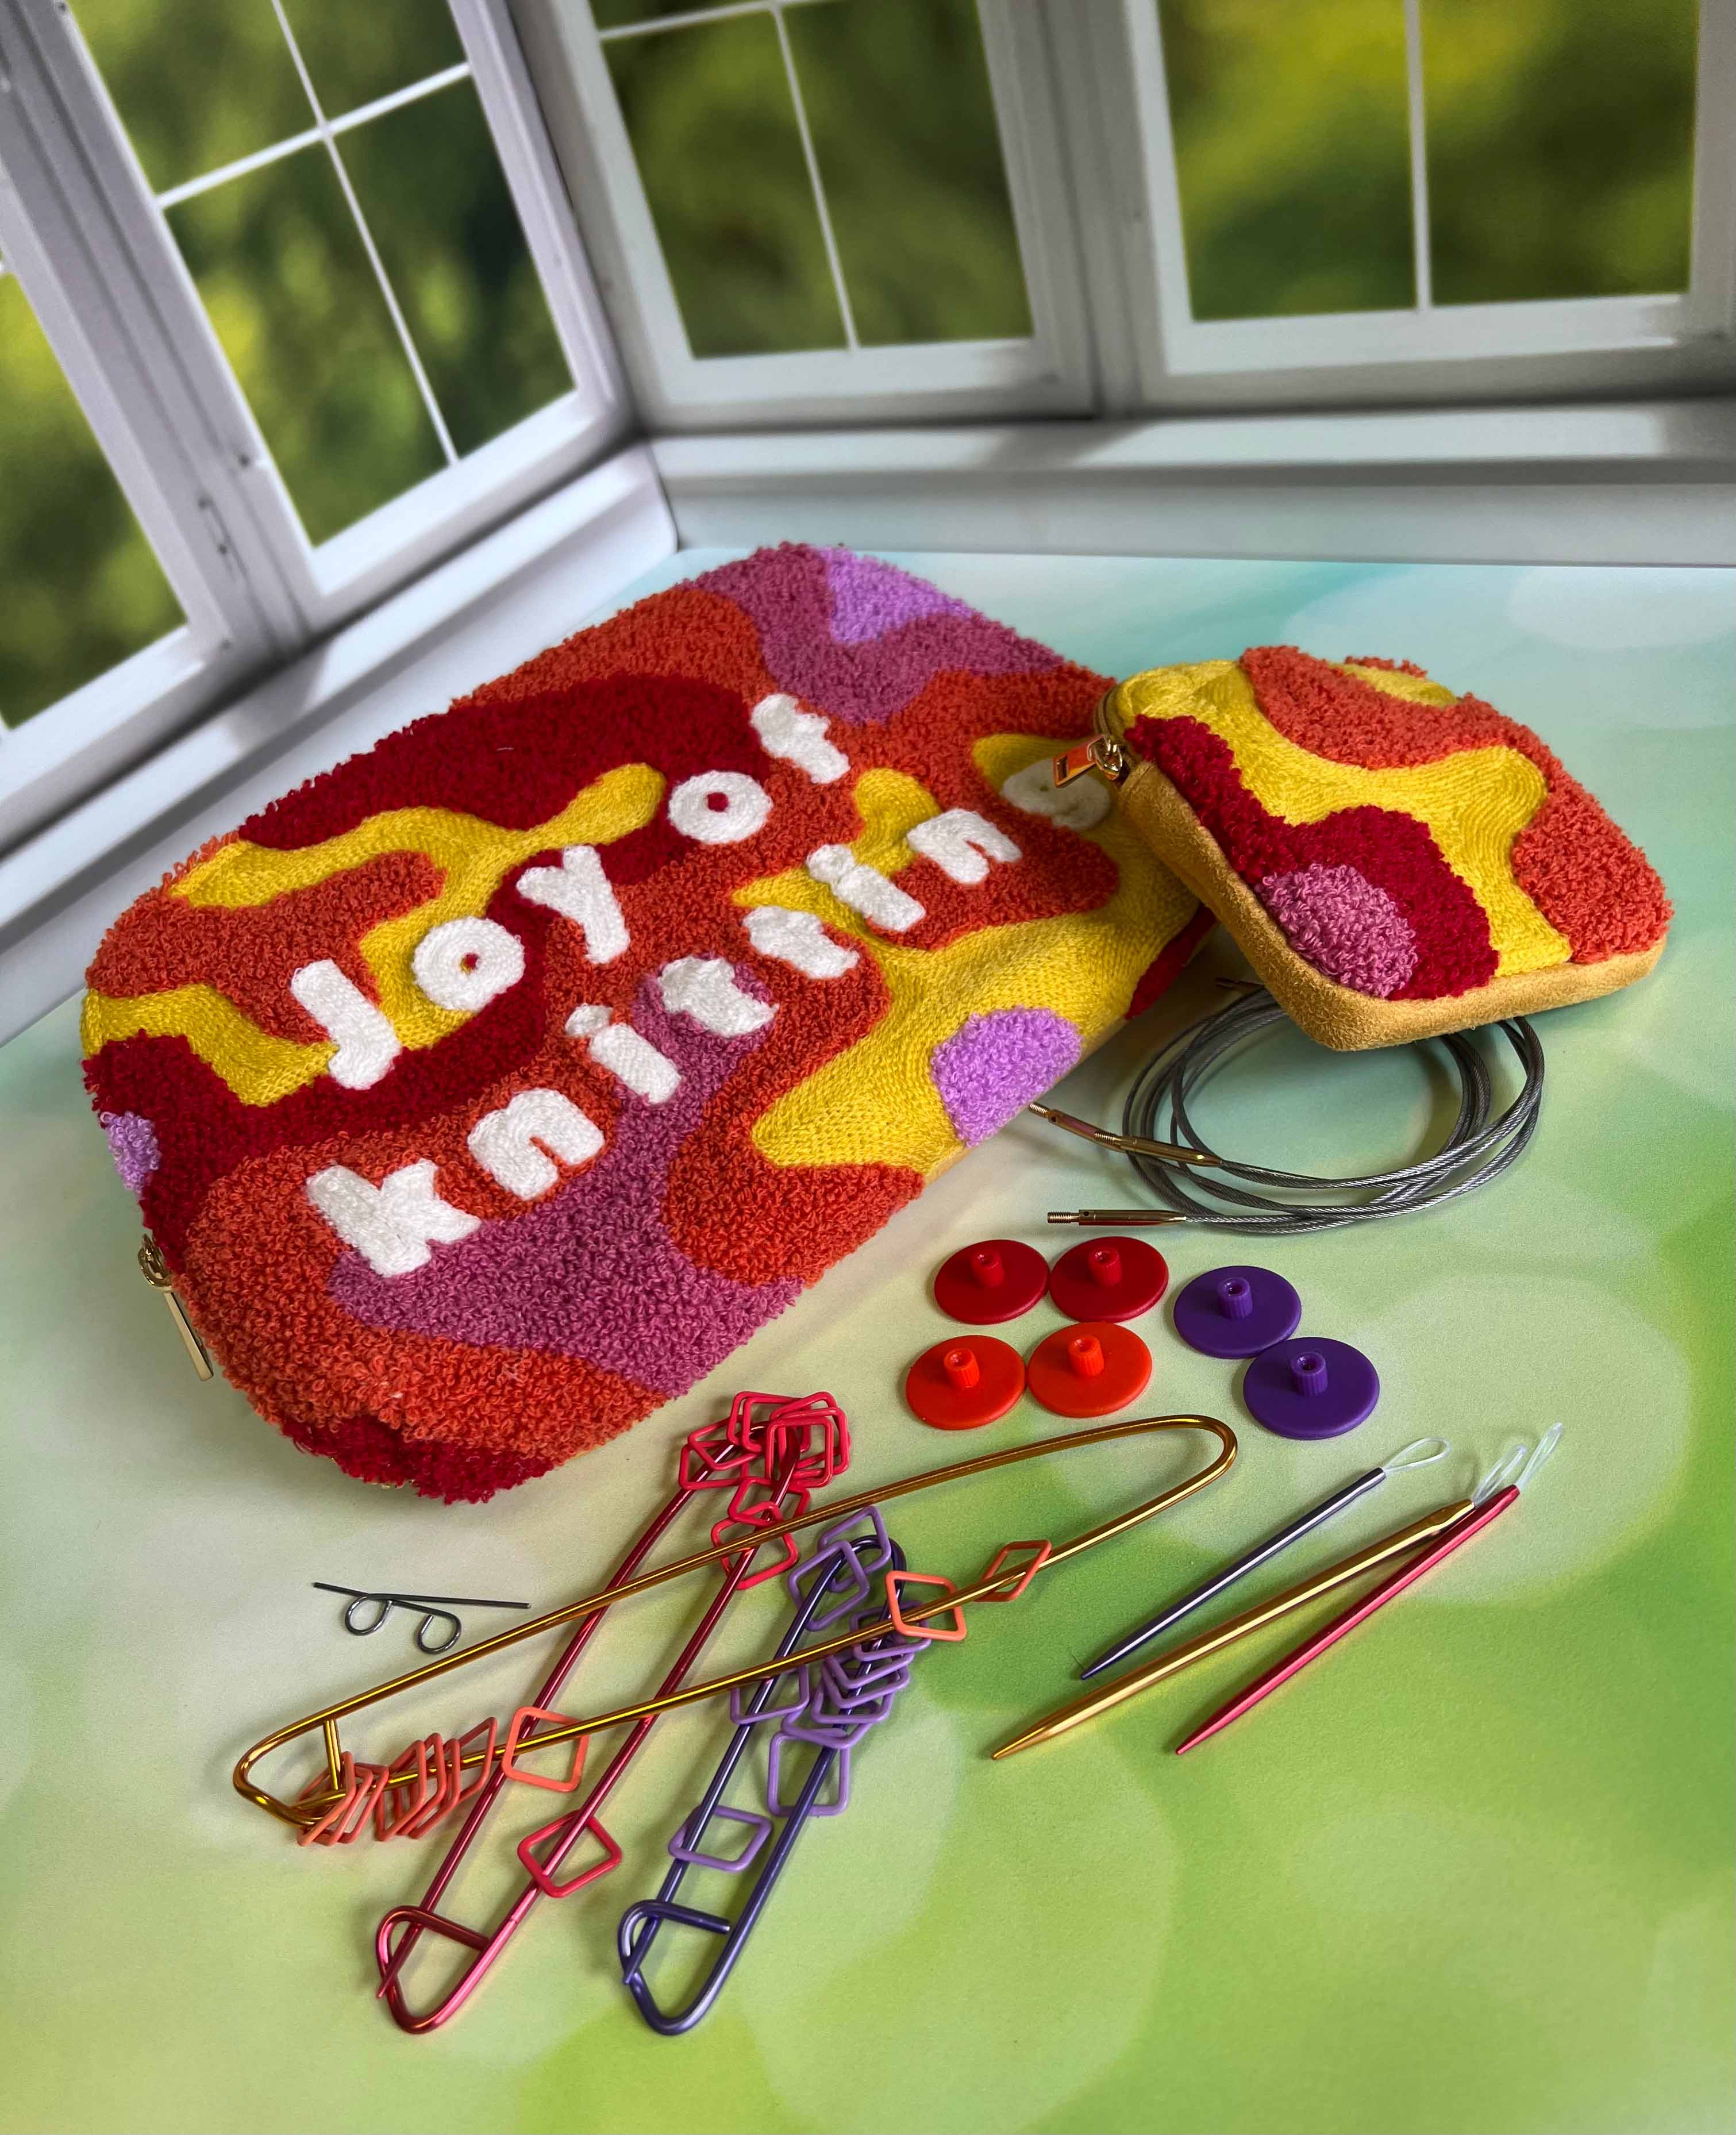 Knitter's Pride Dreamz Short Tips Interchangeable Knitting Needle Tips